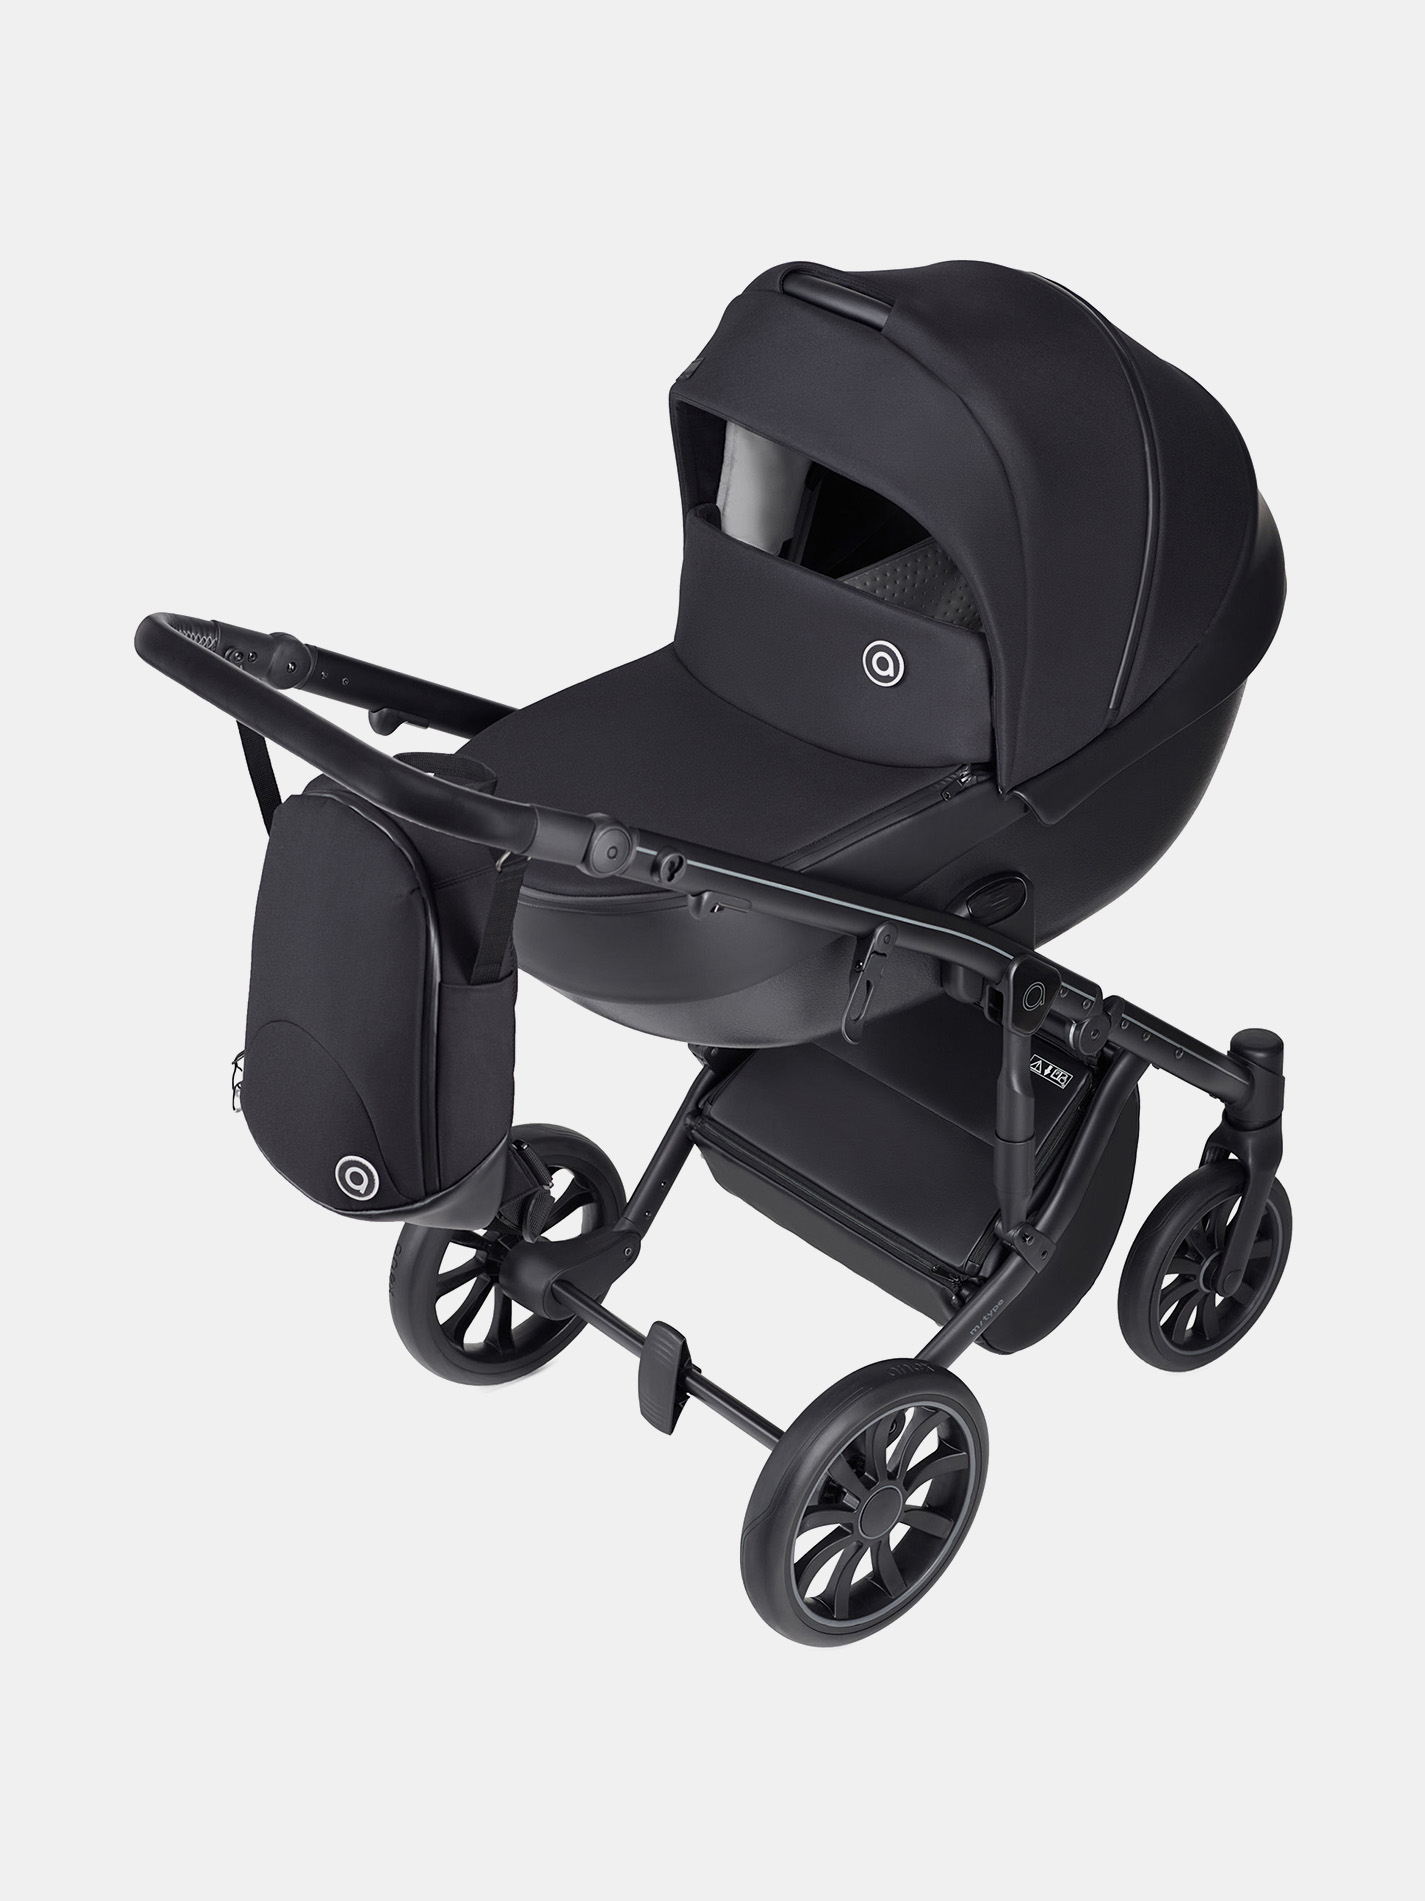 Maxi-Cosi - Babyschale Babyschale CabrioFix i-Size ab Geburt - 12 Monate  (40-75 cm) & Isofix-Basis, Sitzverkleinerer, Sonnenverdeck, Regenschutz,  Insektenschutz…